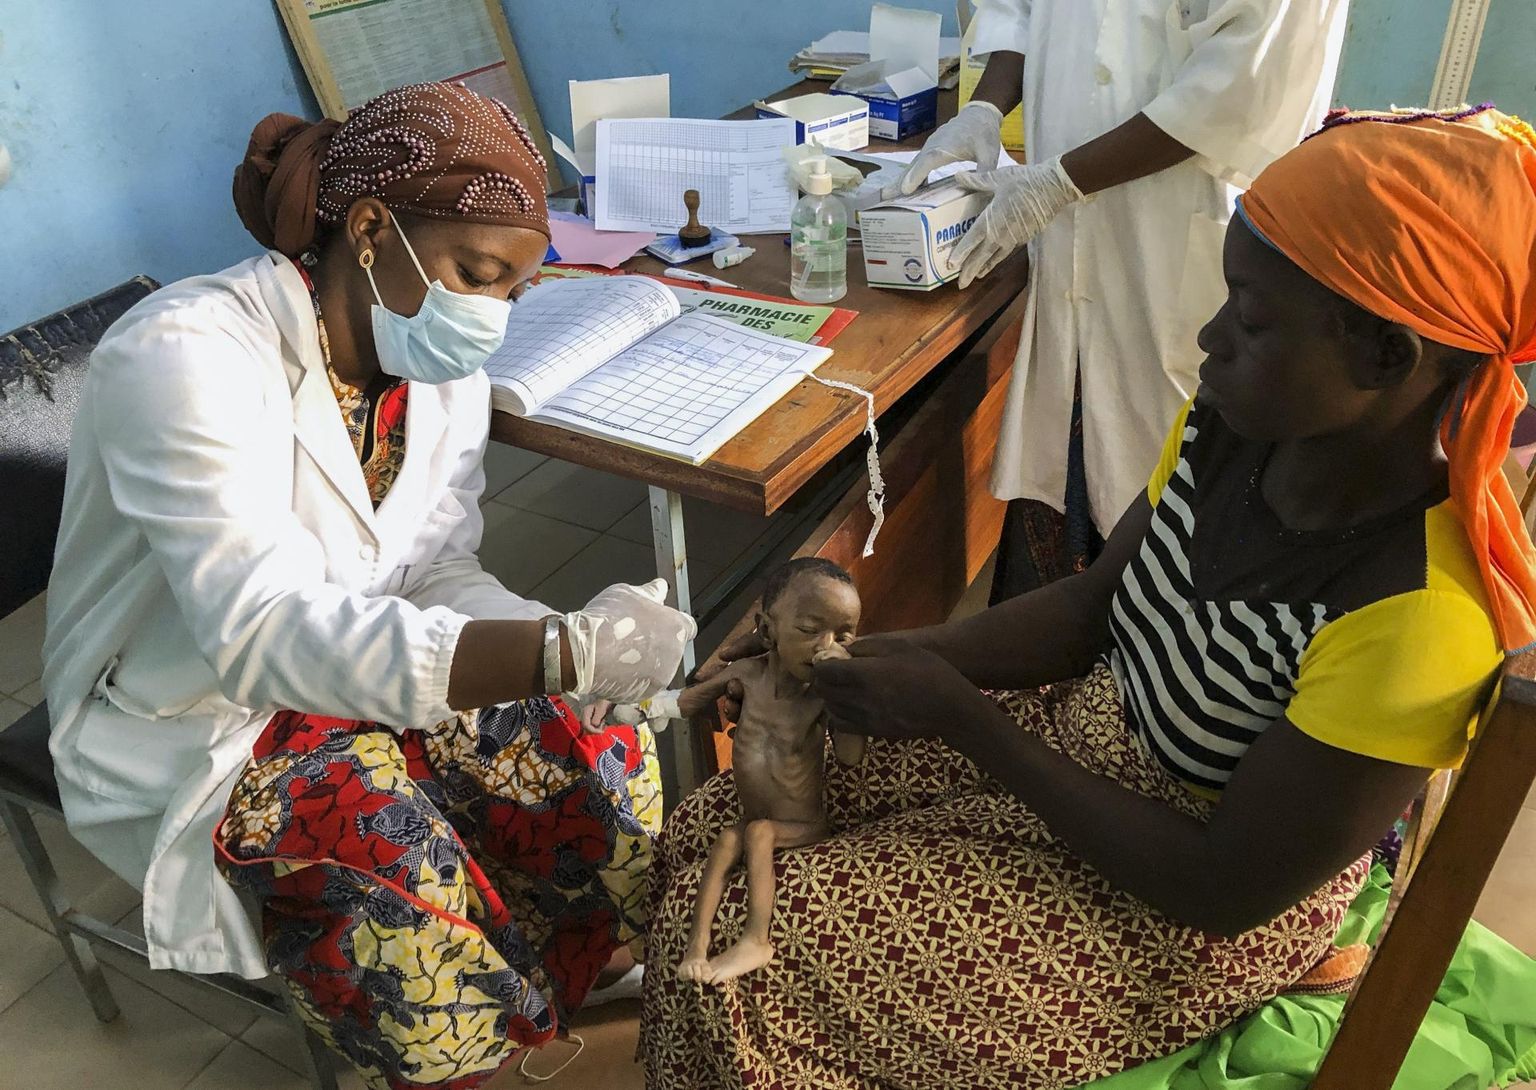 Ühekuune Haboue Solange Boue istub oma ema Danssanin Lanizou süles, samal ajal kui meditsiinitöötaja paigaldab rängas alatoitumuses lapsele tilguti Burkina Faso edelaosas Tuy provintsis Hounde haiglas.